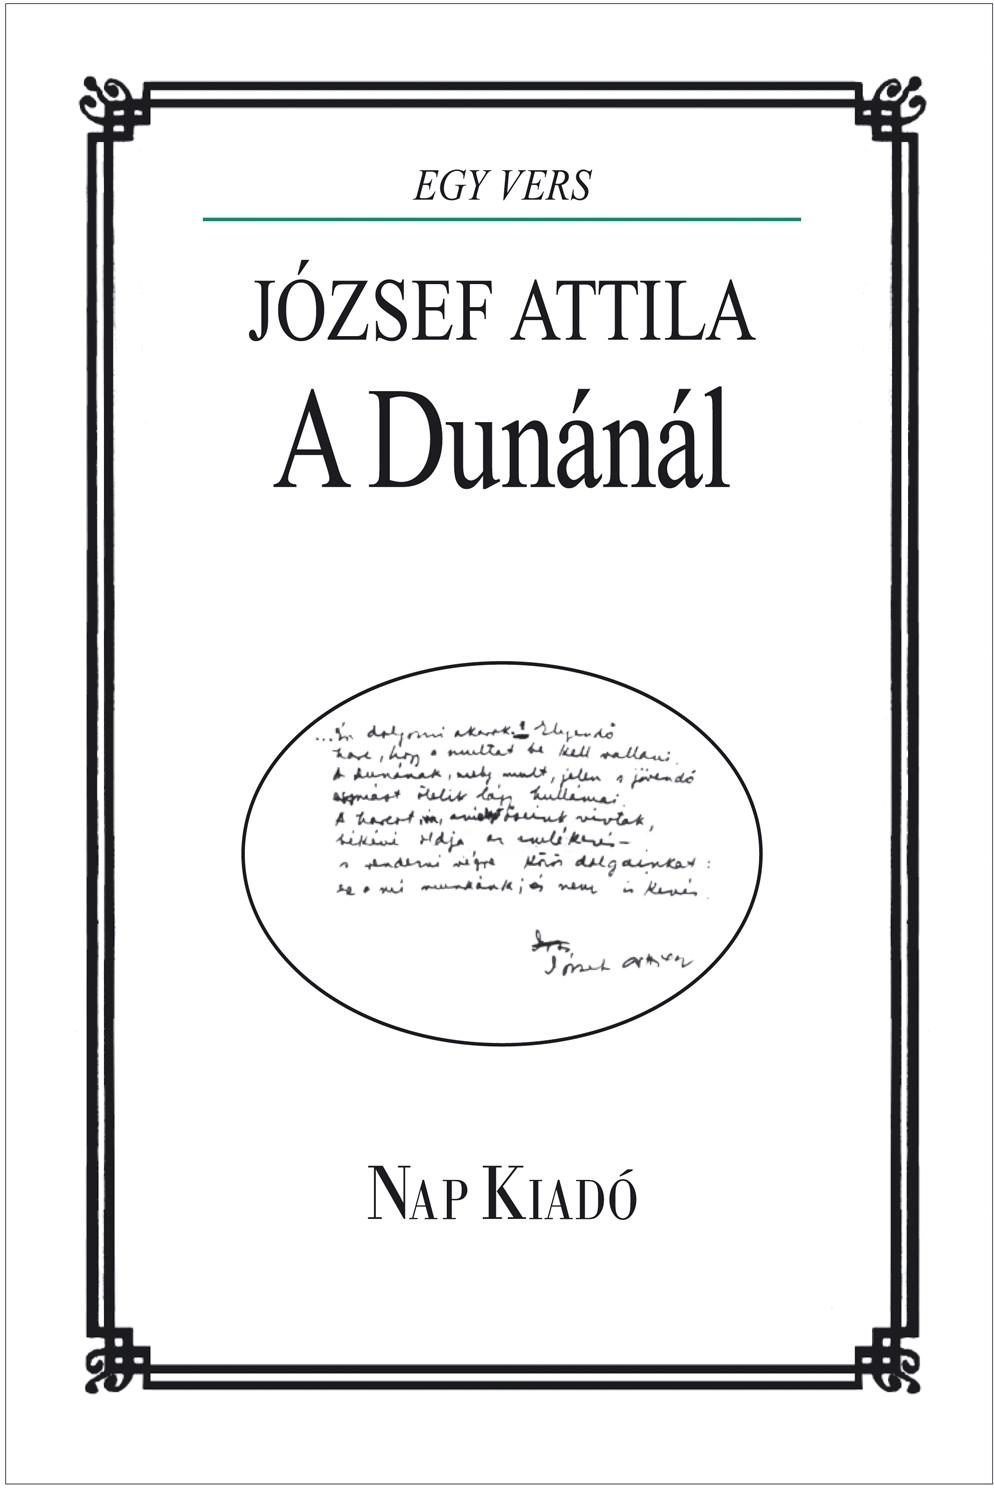  - A Dunnl - Jzsef Attila